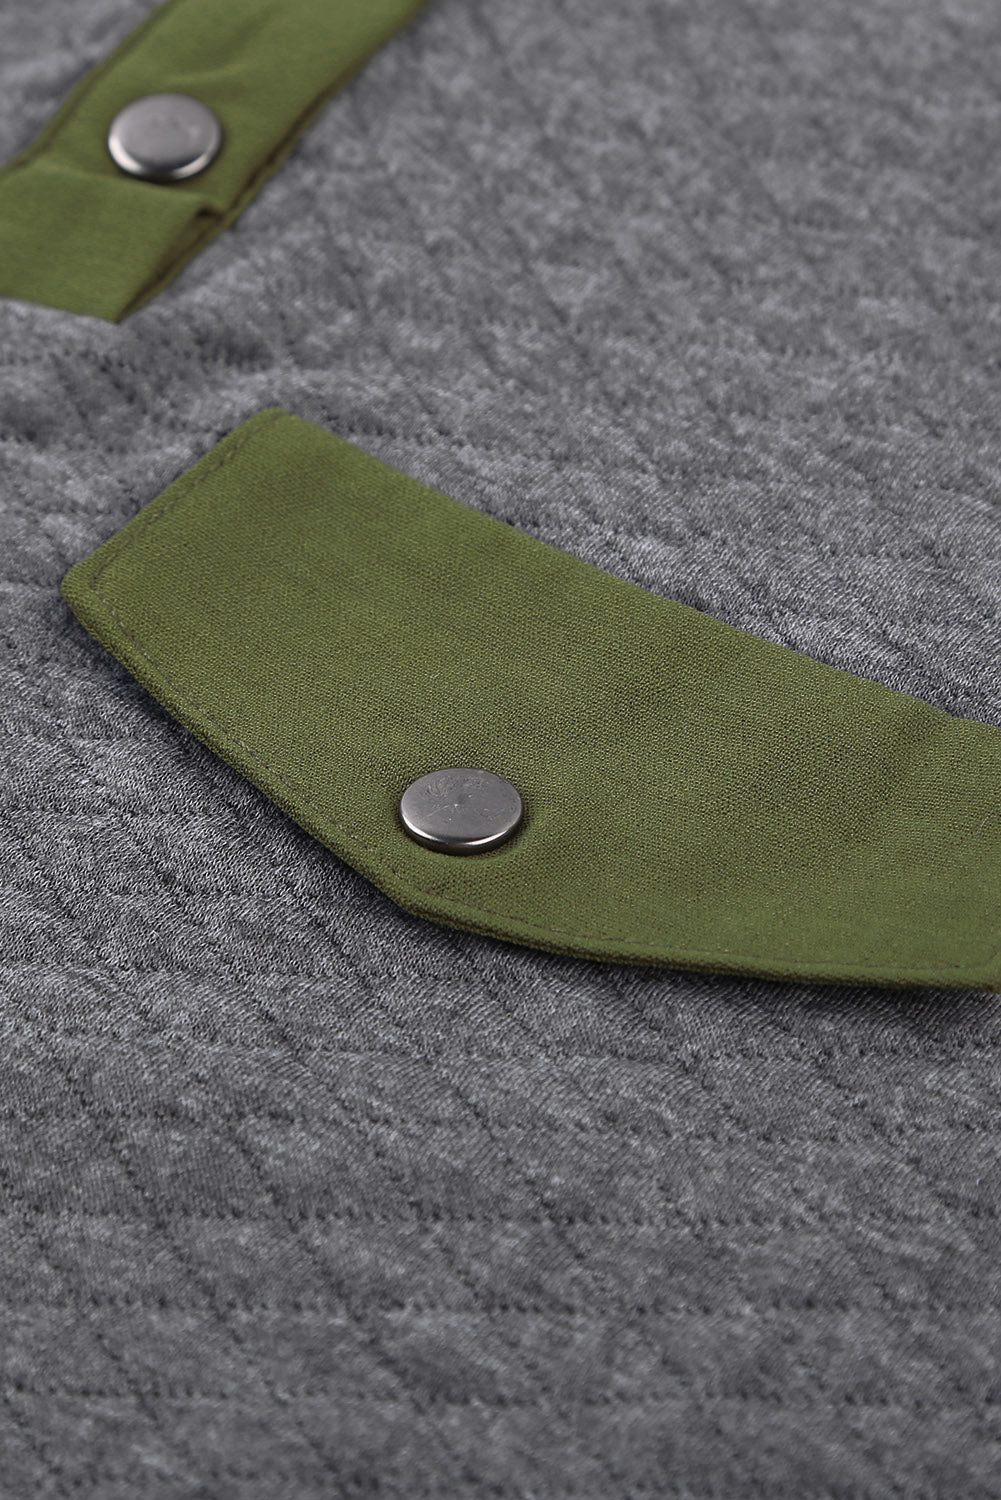 Felpa pullover grigia trapuntata con bottoni automatici e tasca frontale finta